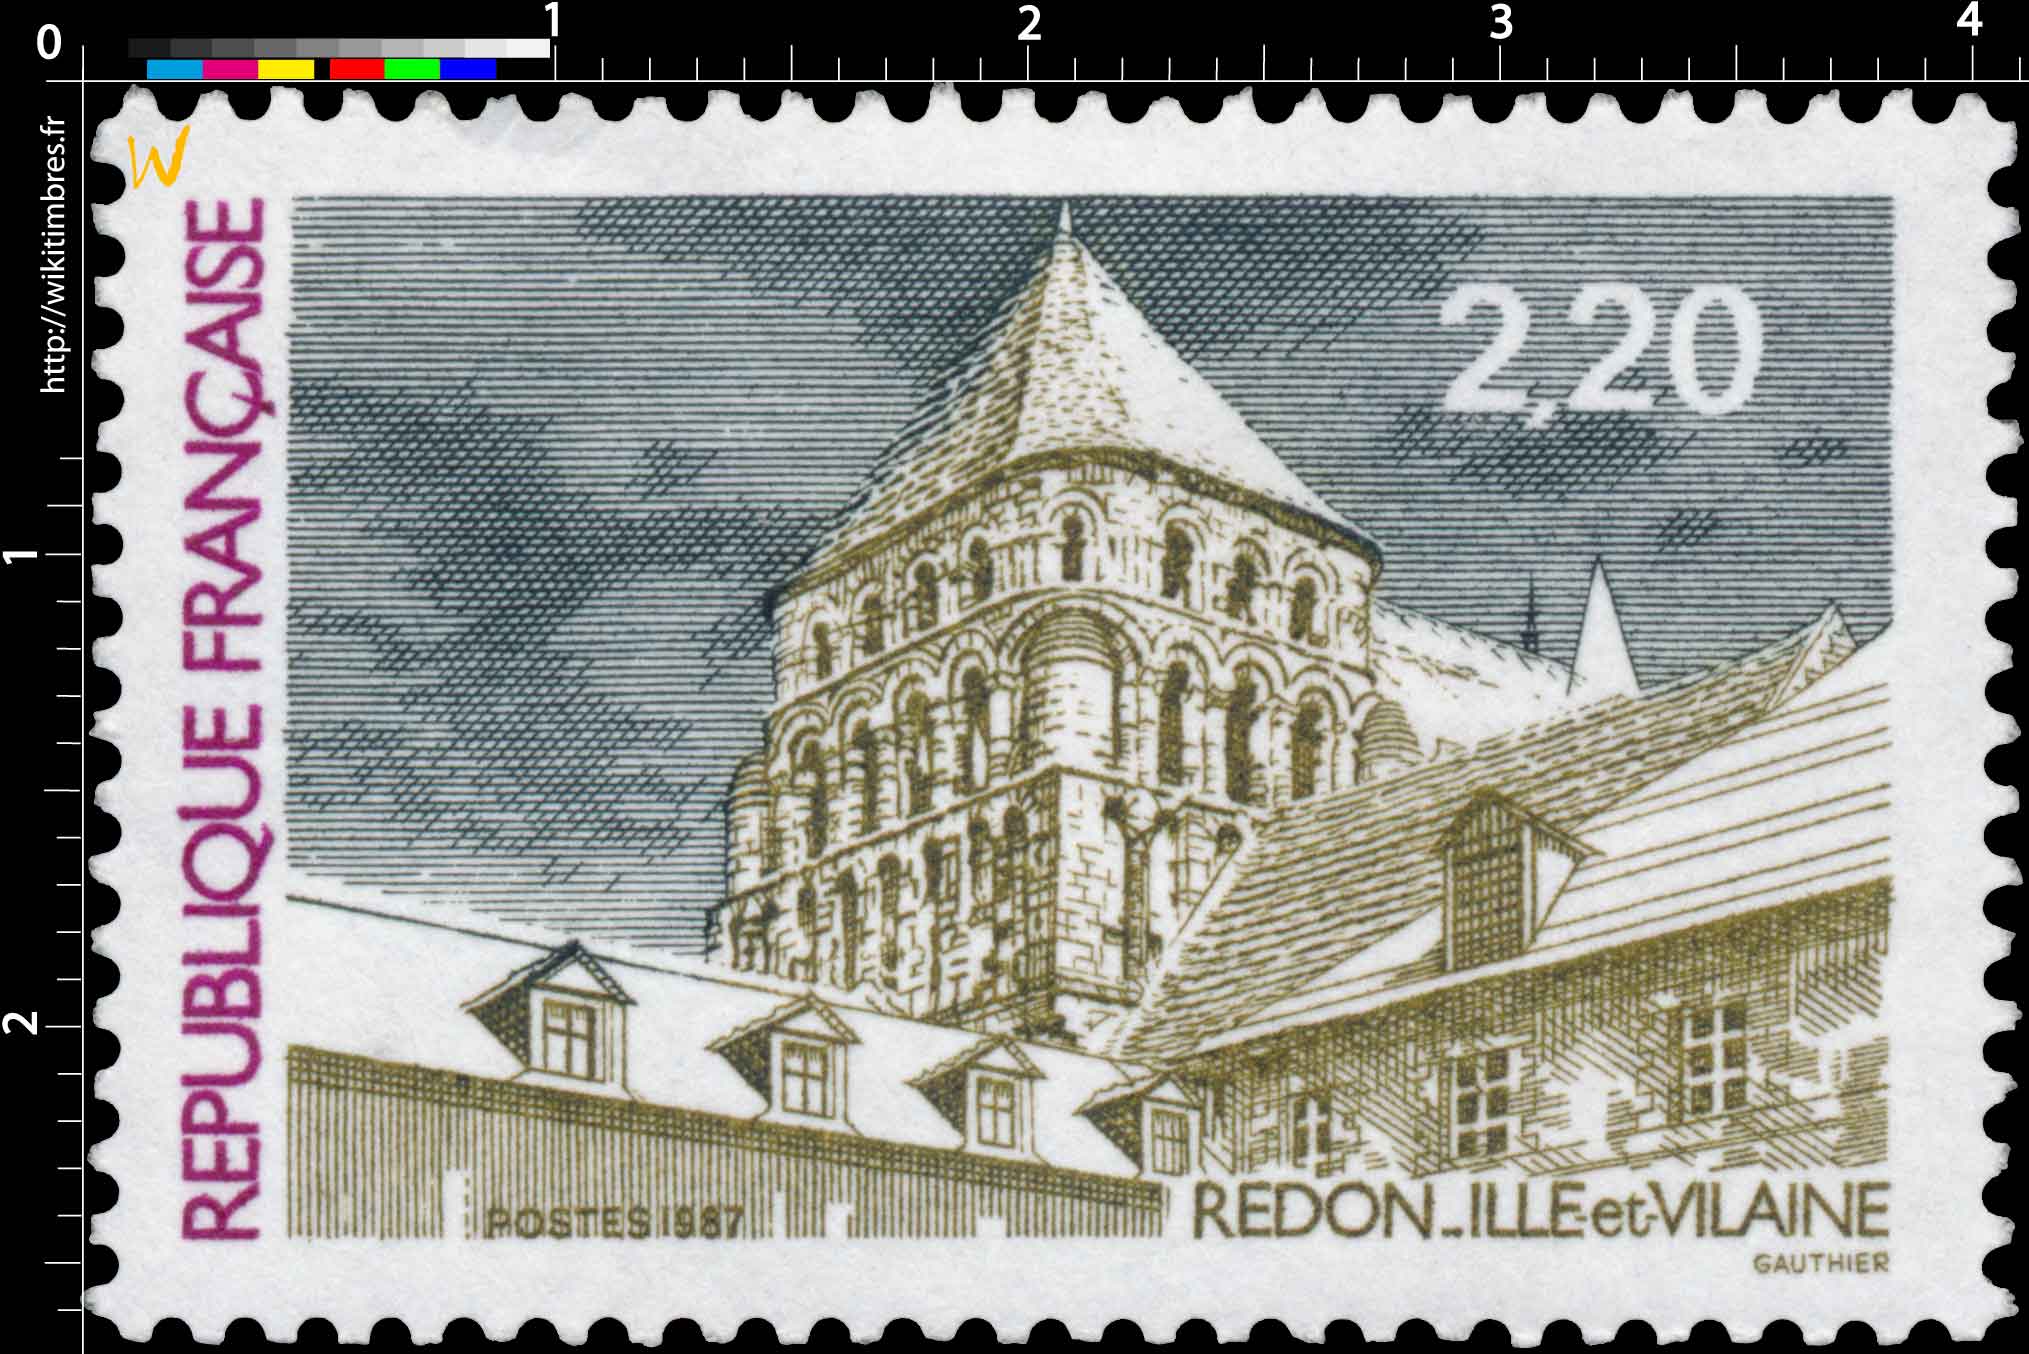 1987 REDON-ILLE-et-VILAINE